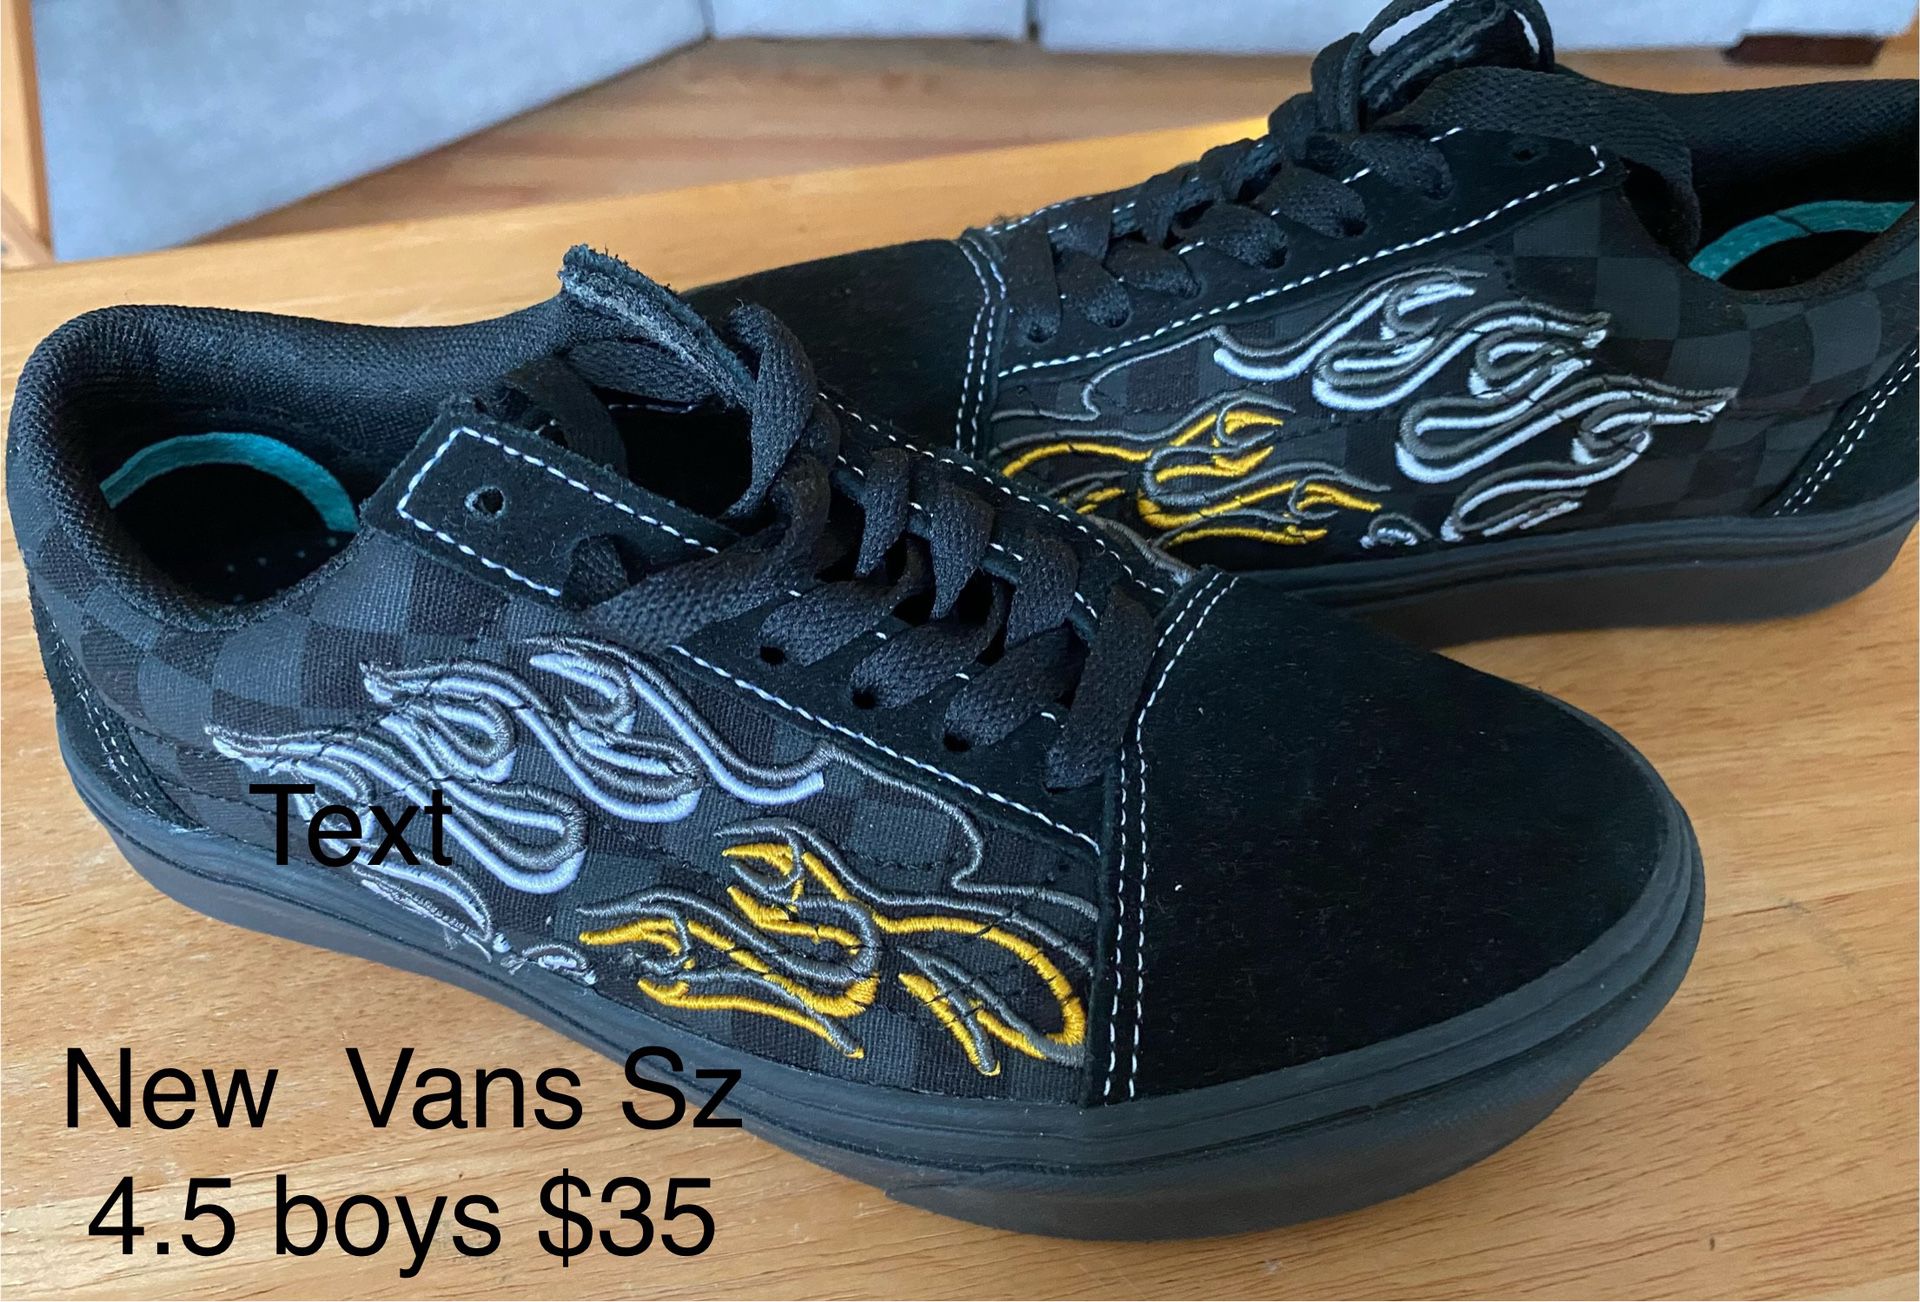 New Vans! Sneakers sz. 4.5